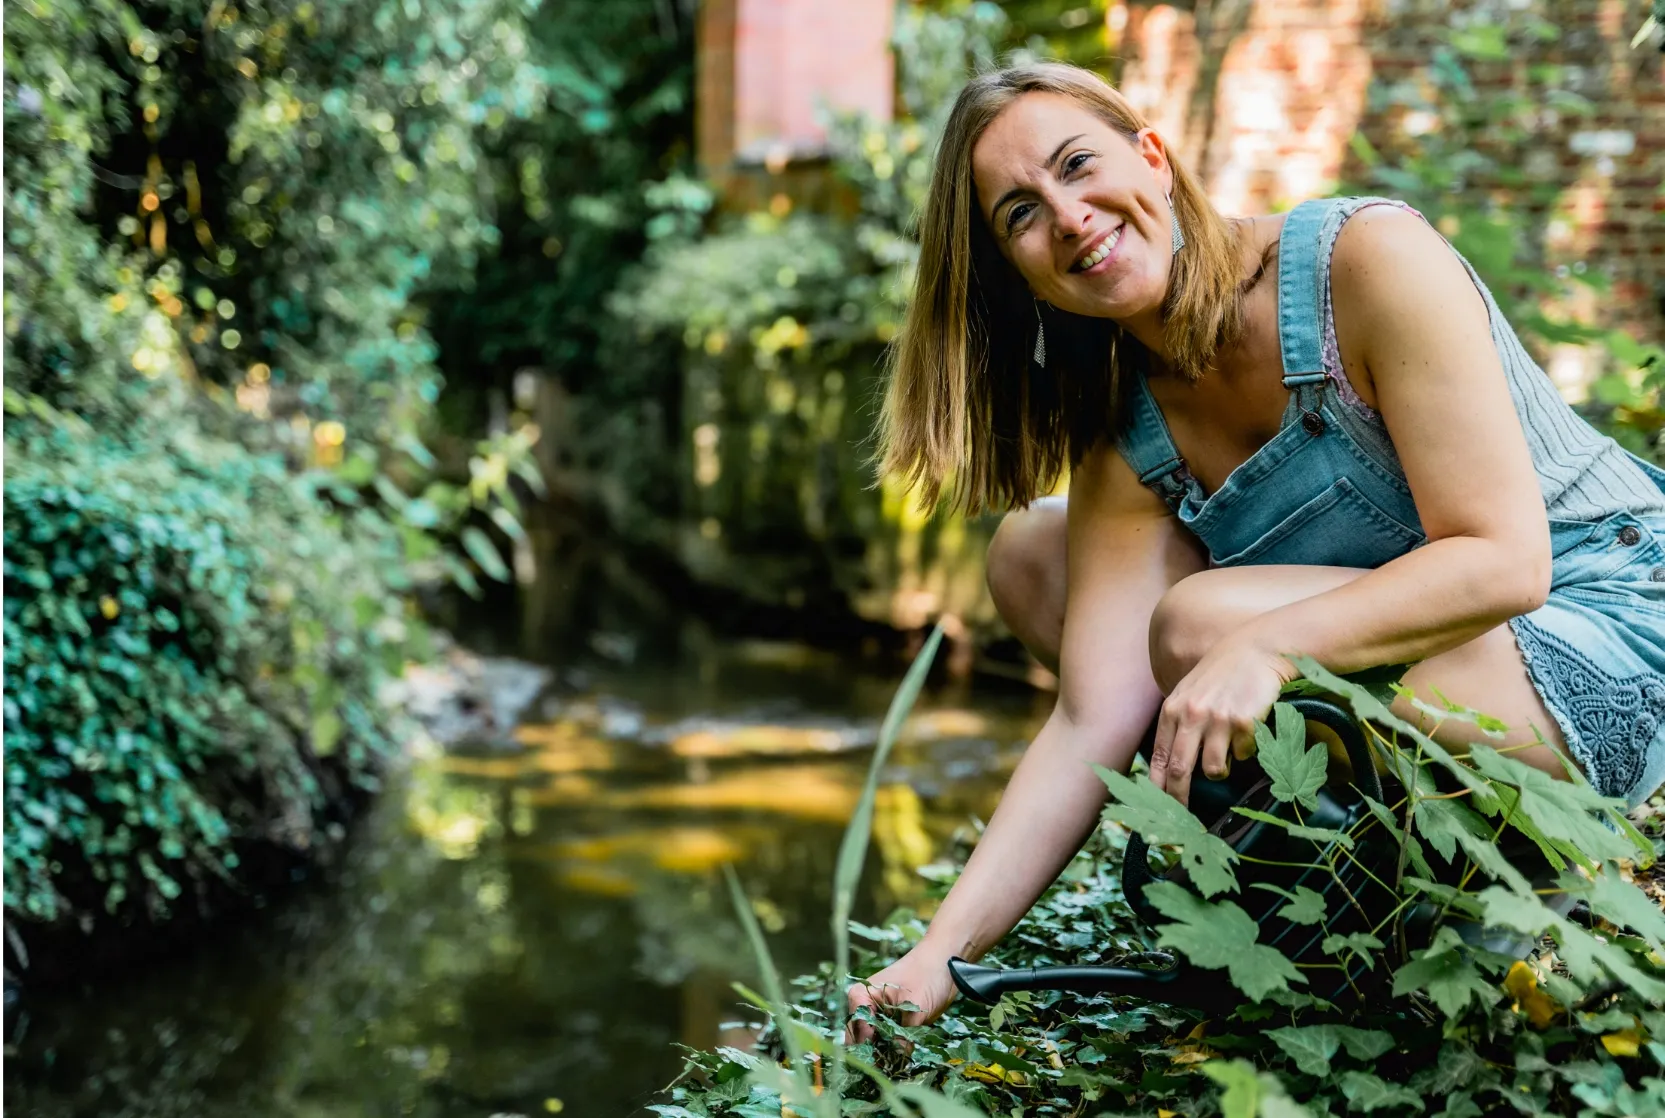 Een vrouw in een denim tuinbroek zittend naast een kabbelende beek in een weelderige tuin. Ze glimlacht en lijkt te genieten van de natuur terwijl ze zich over de planten buigt.